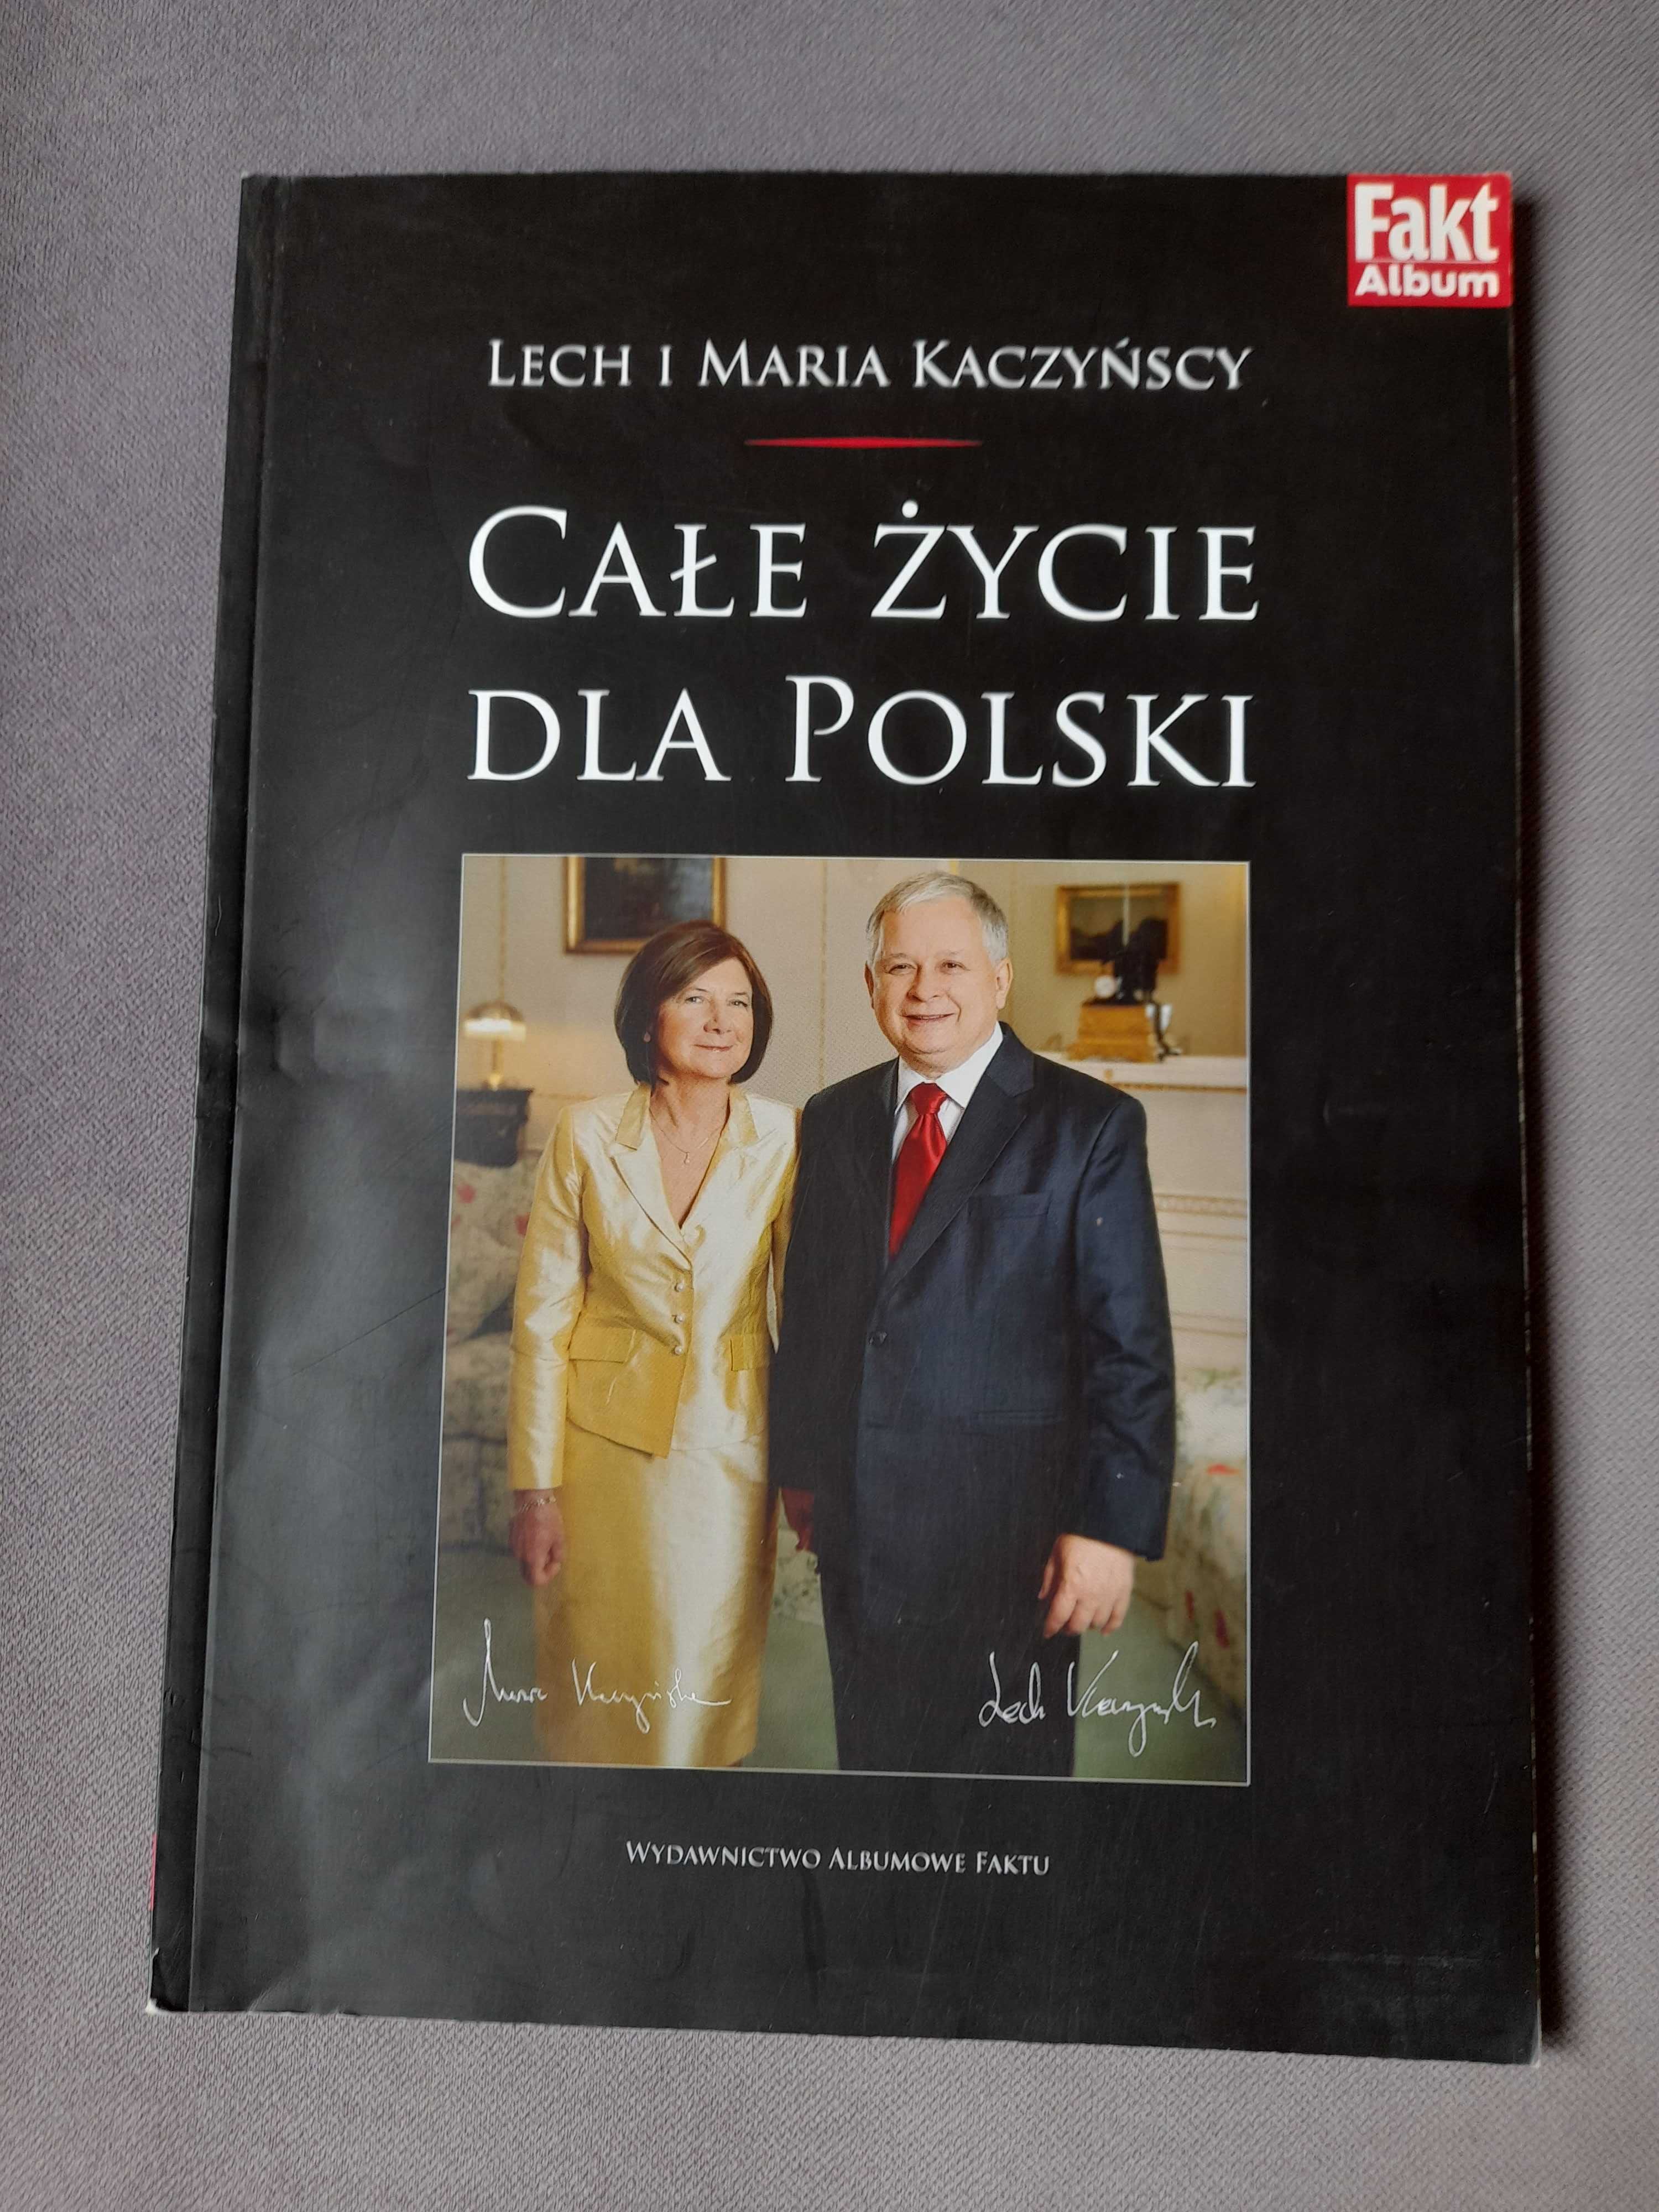 Całe życie dla Polski Lech i Maria Kaczyńscy 2010